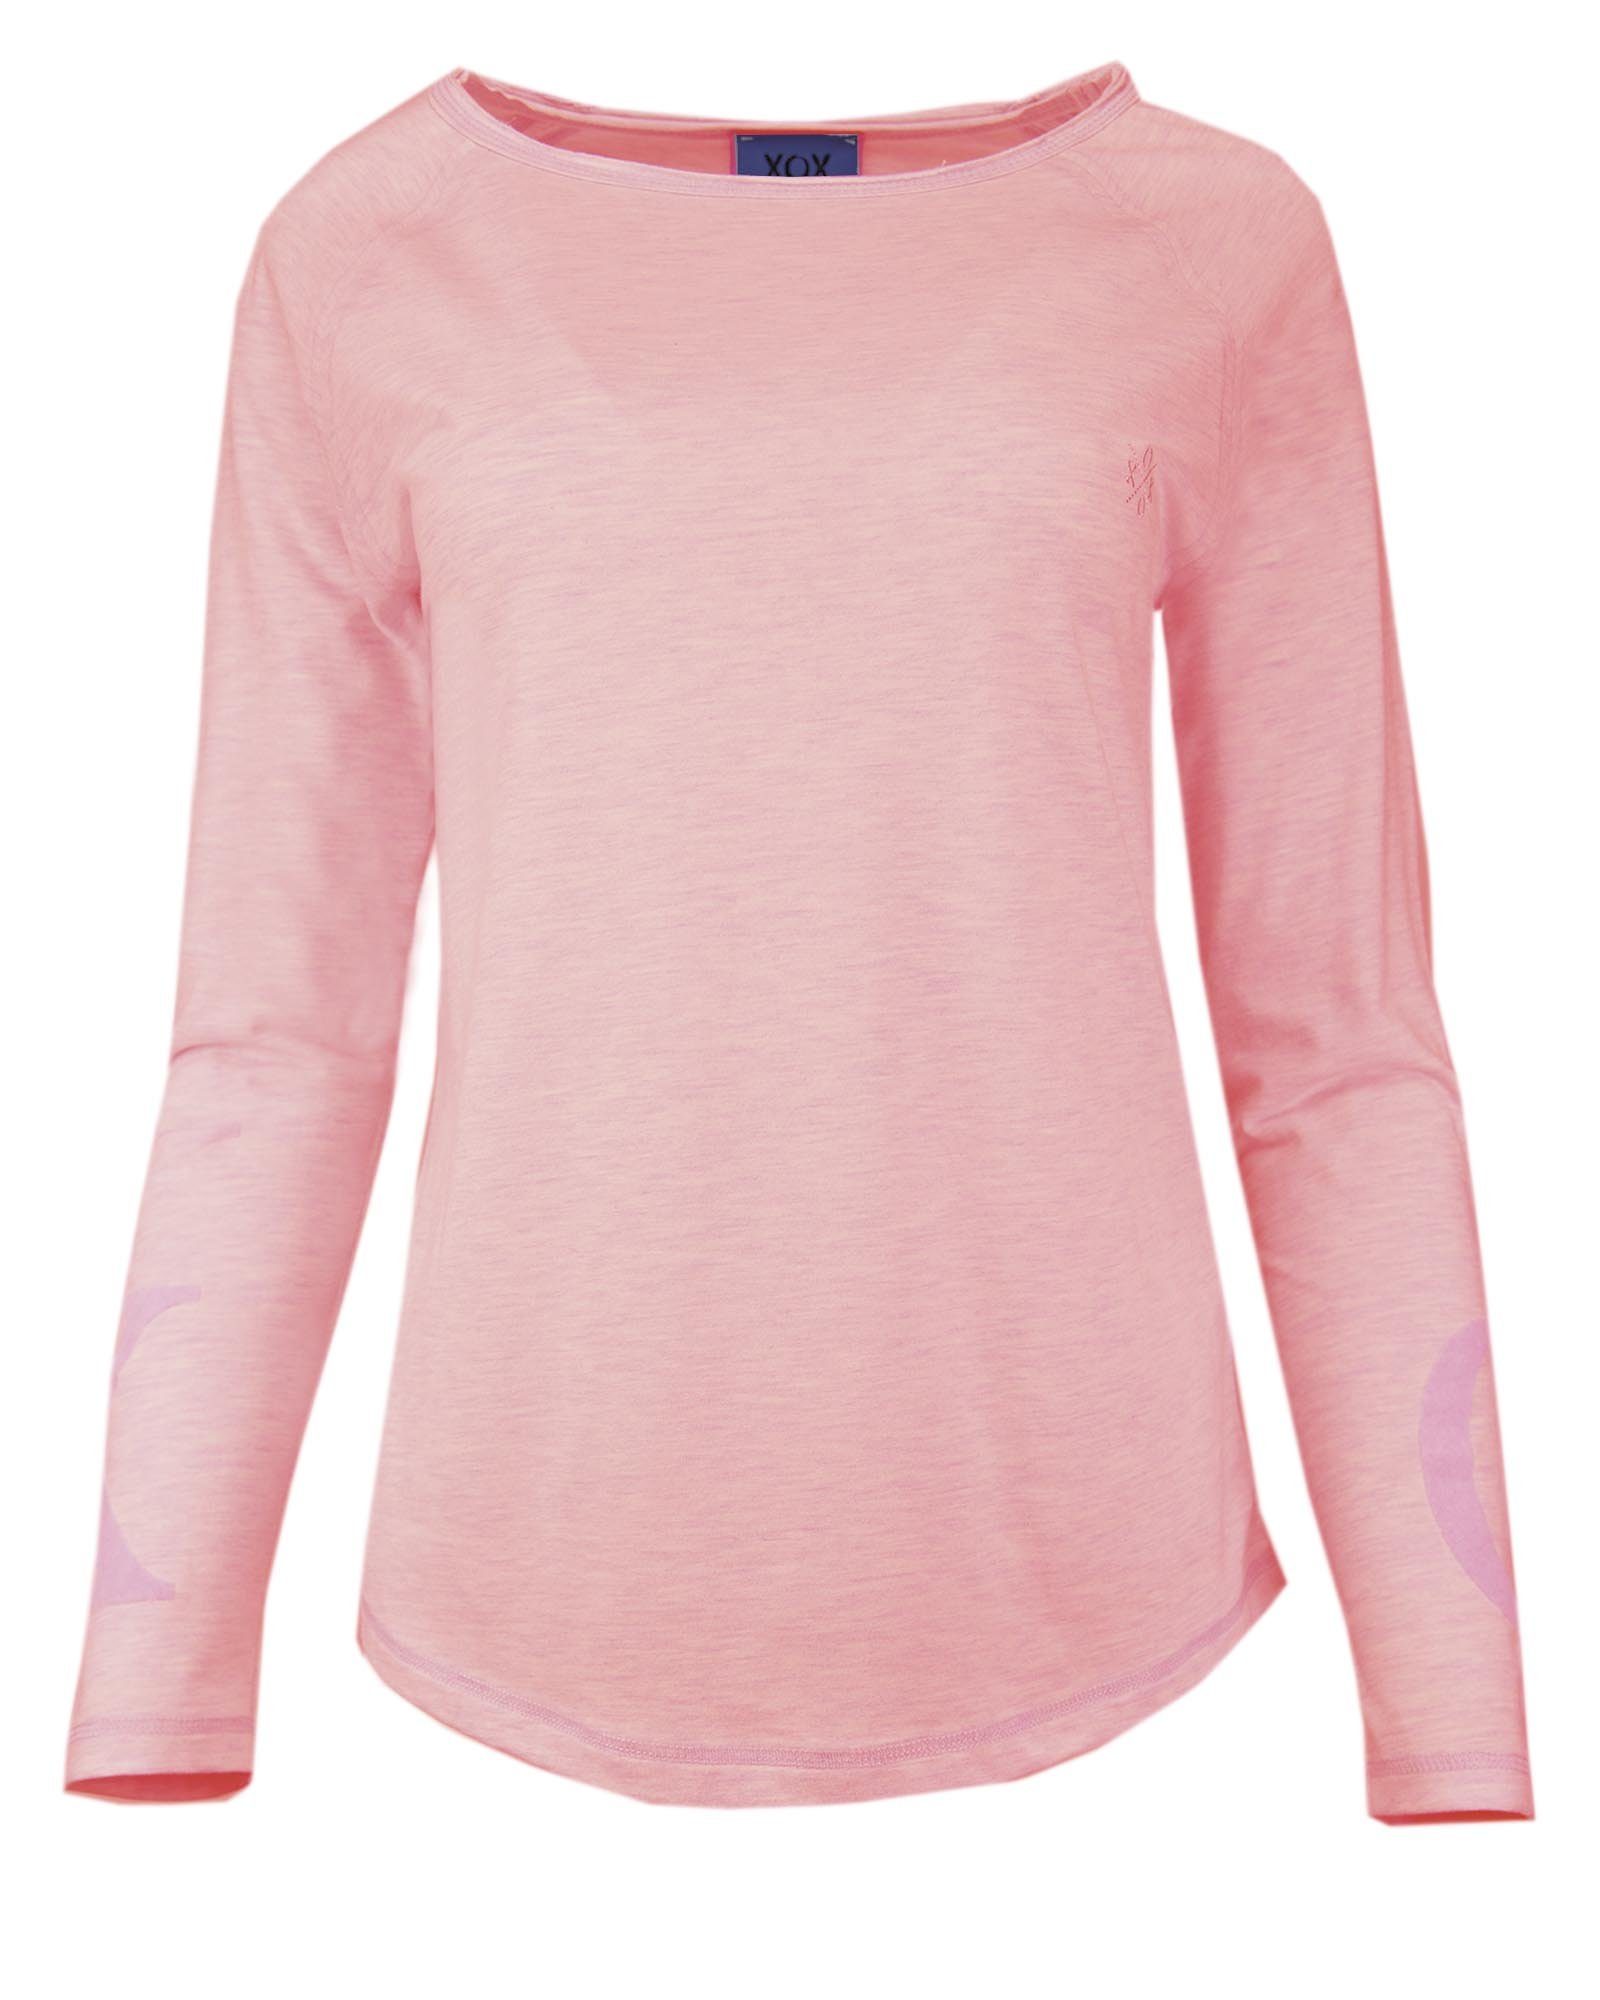 Shirt, Fair - Hoodie XOX XOX Oberteil, Longsleeve, Trade, rosé Rundhals Shirt Ausschnitt, Damenmode